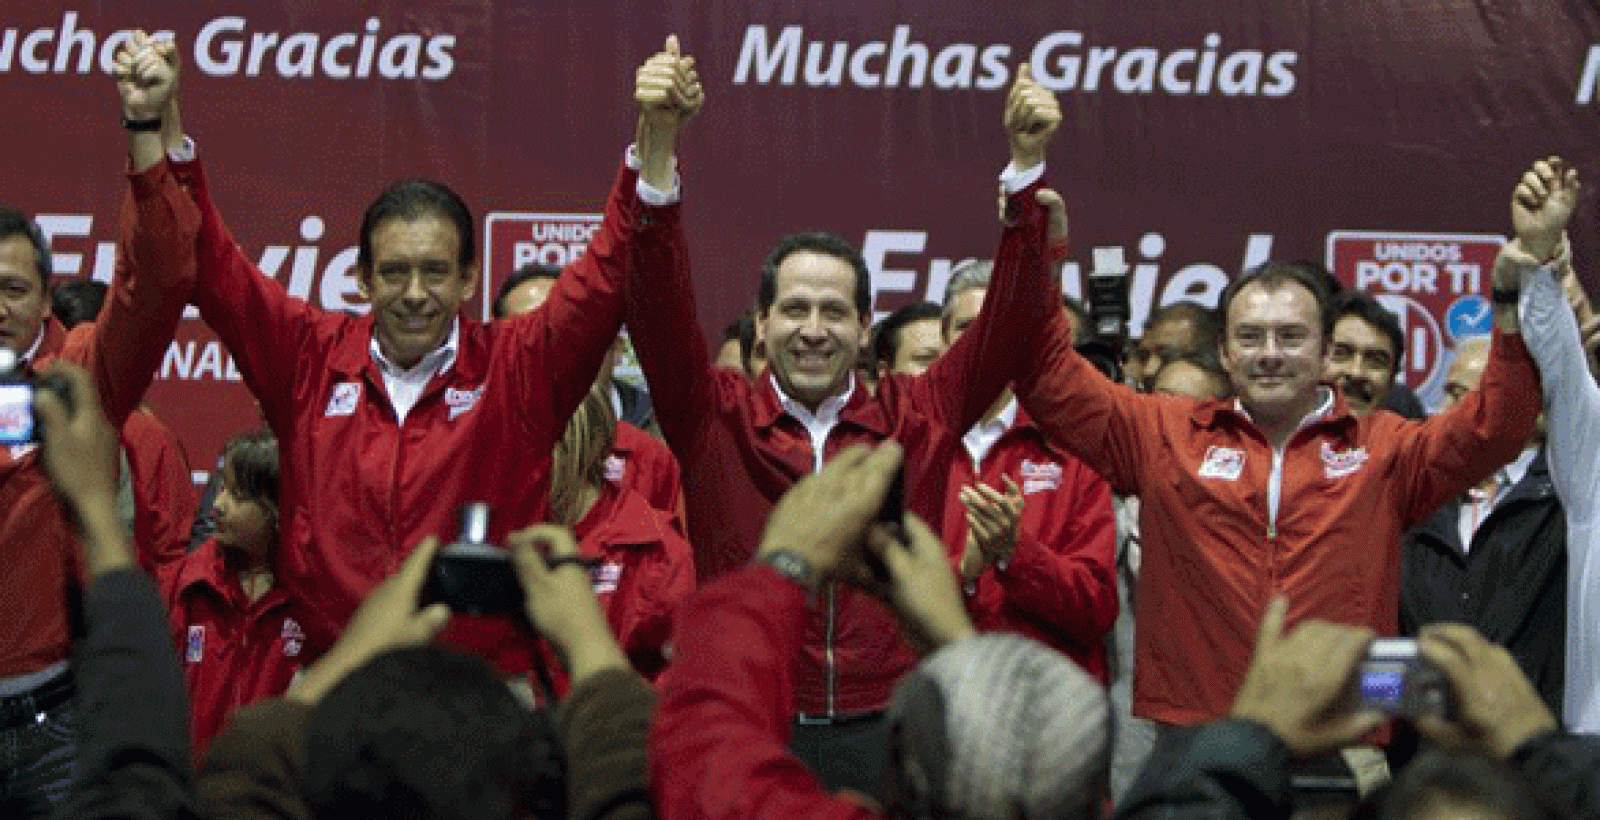 El candidato al gobierno del Estado de México por el Partido Reovulucionario Institucional (PRI), Eruviel Ávila celebra su victoria durante una rueda de prensa en Toluca.